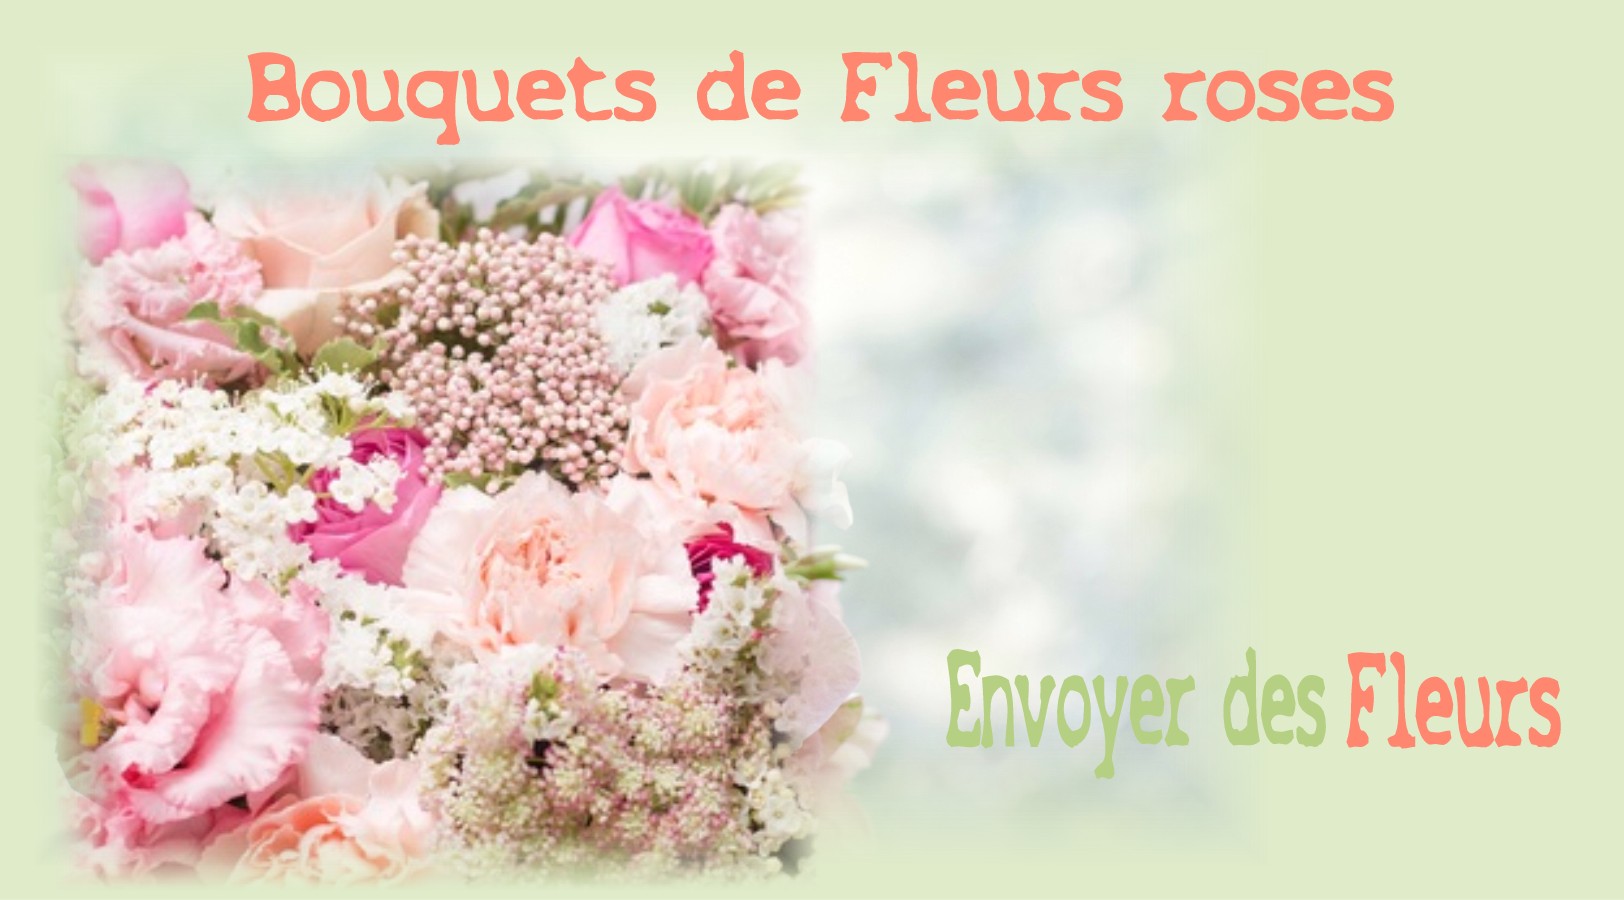 BOUQUETS DE FLEURS ROSES - FLEURISTE de l'AUBE - ENVOYER DES FLEURS